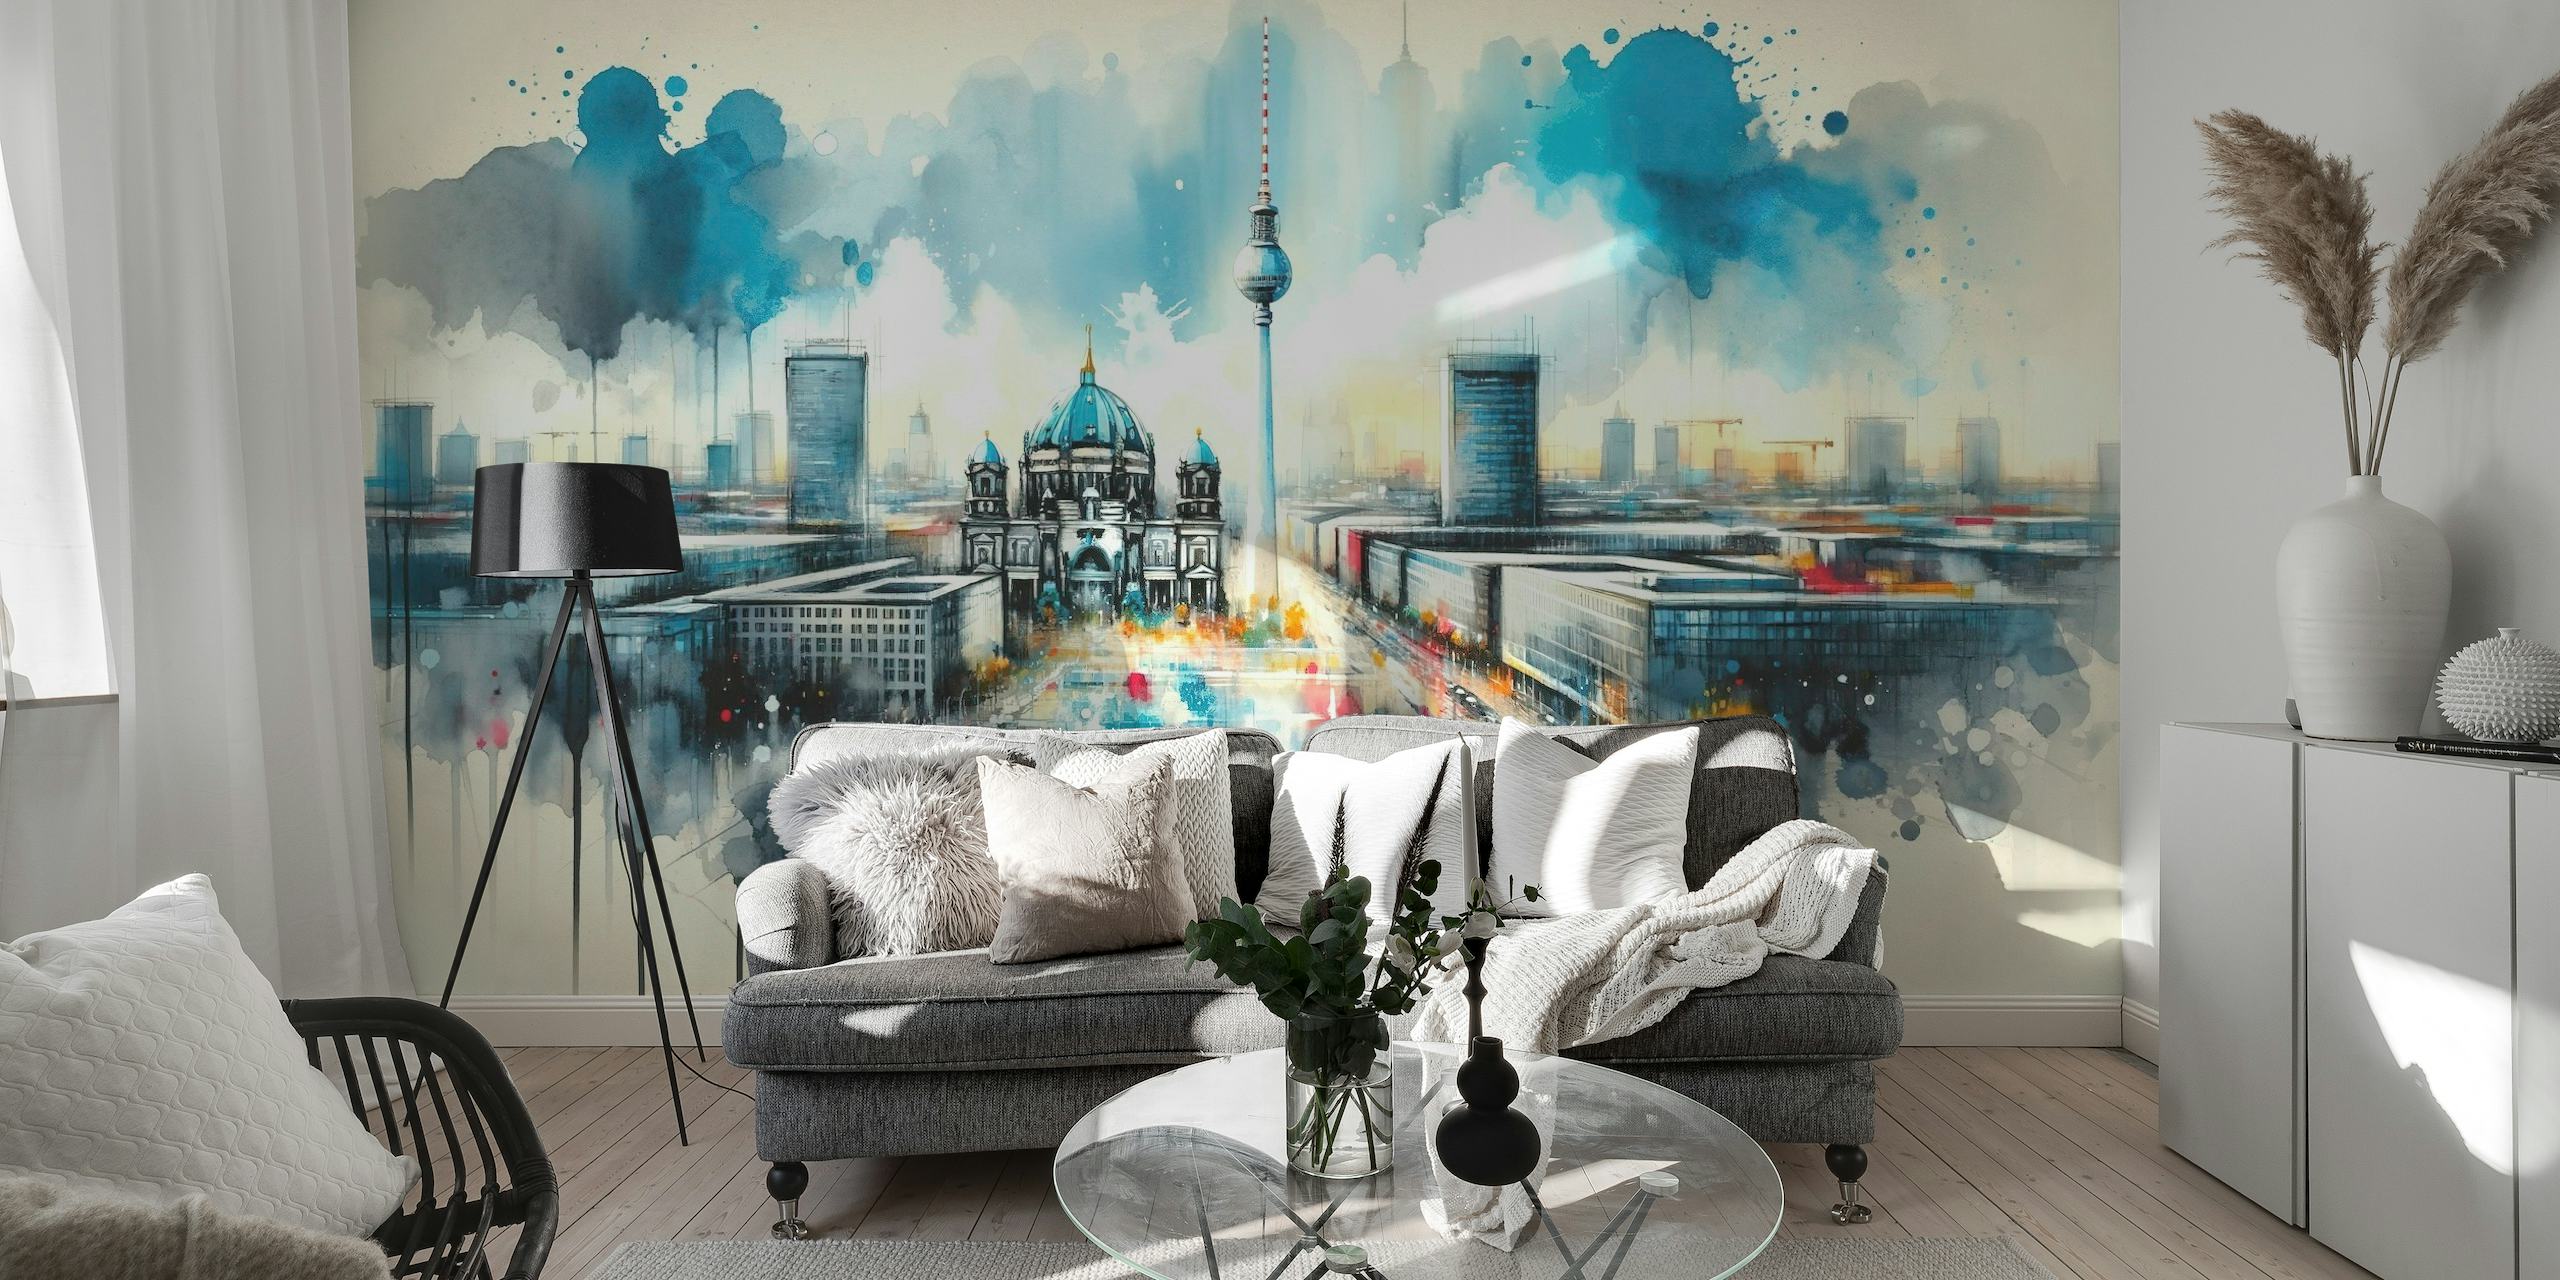 Akwarelowy mural przedstawiający nowoczesną architekturę Berlina z kultowymi zabytkami i dynamiczną, artystyczną interpretacją.